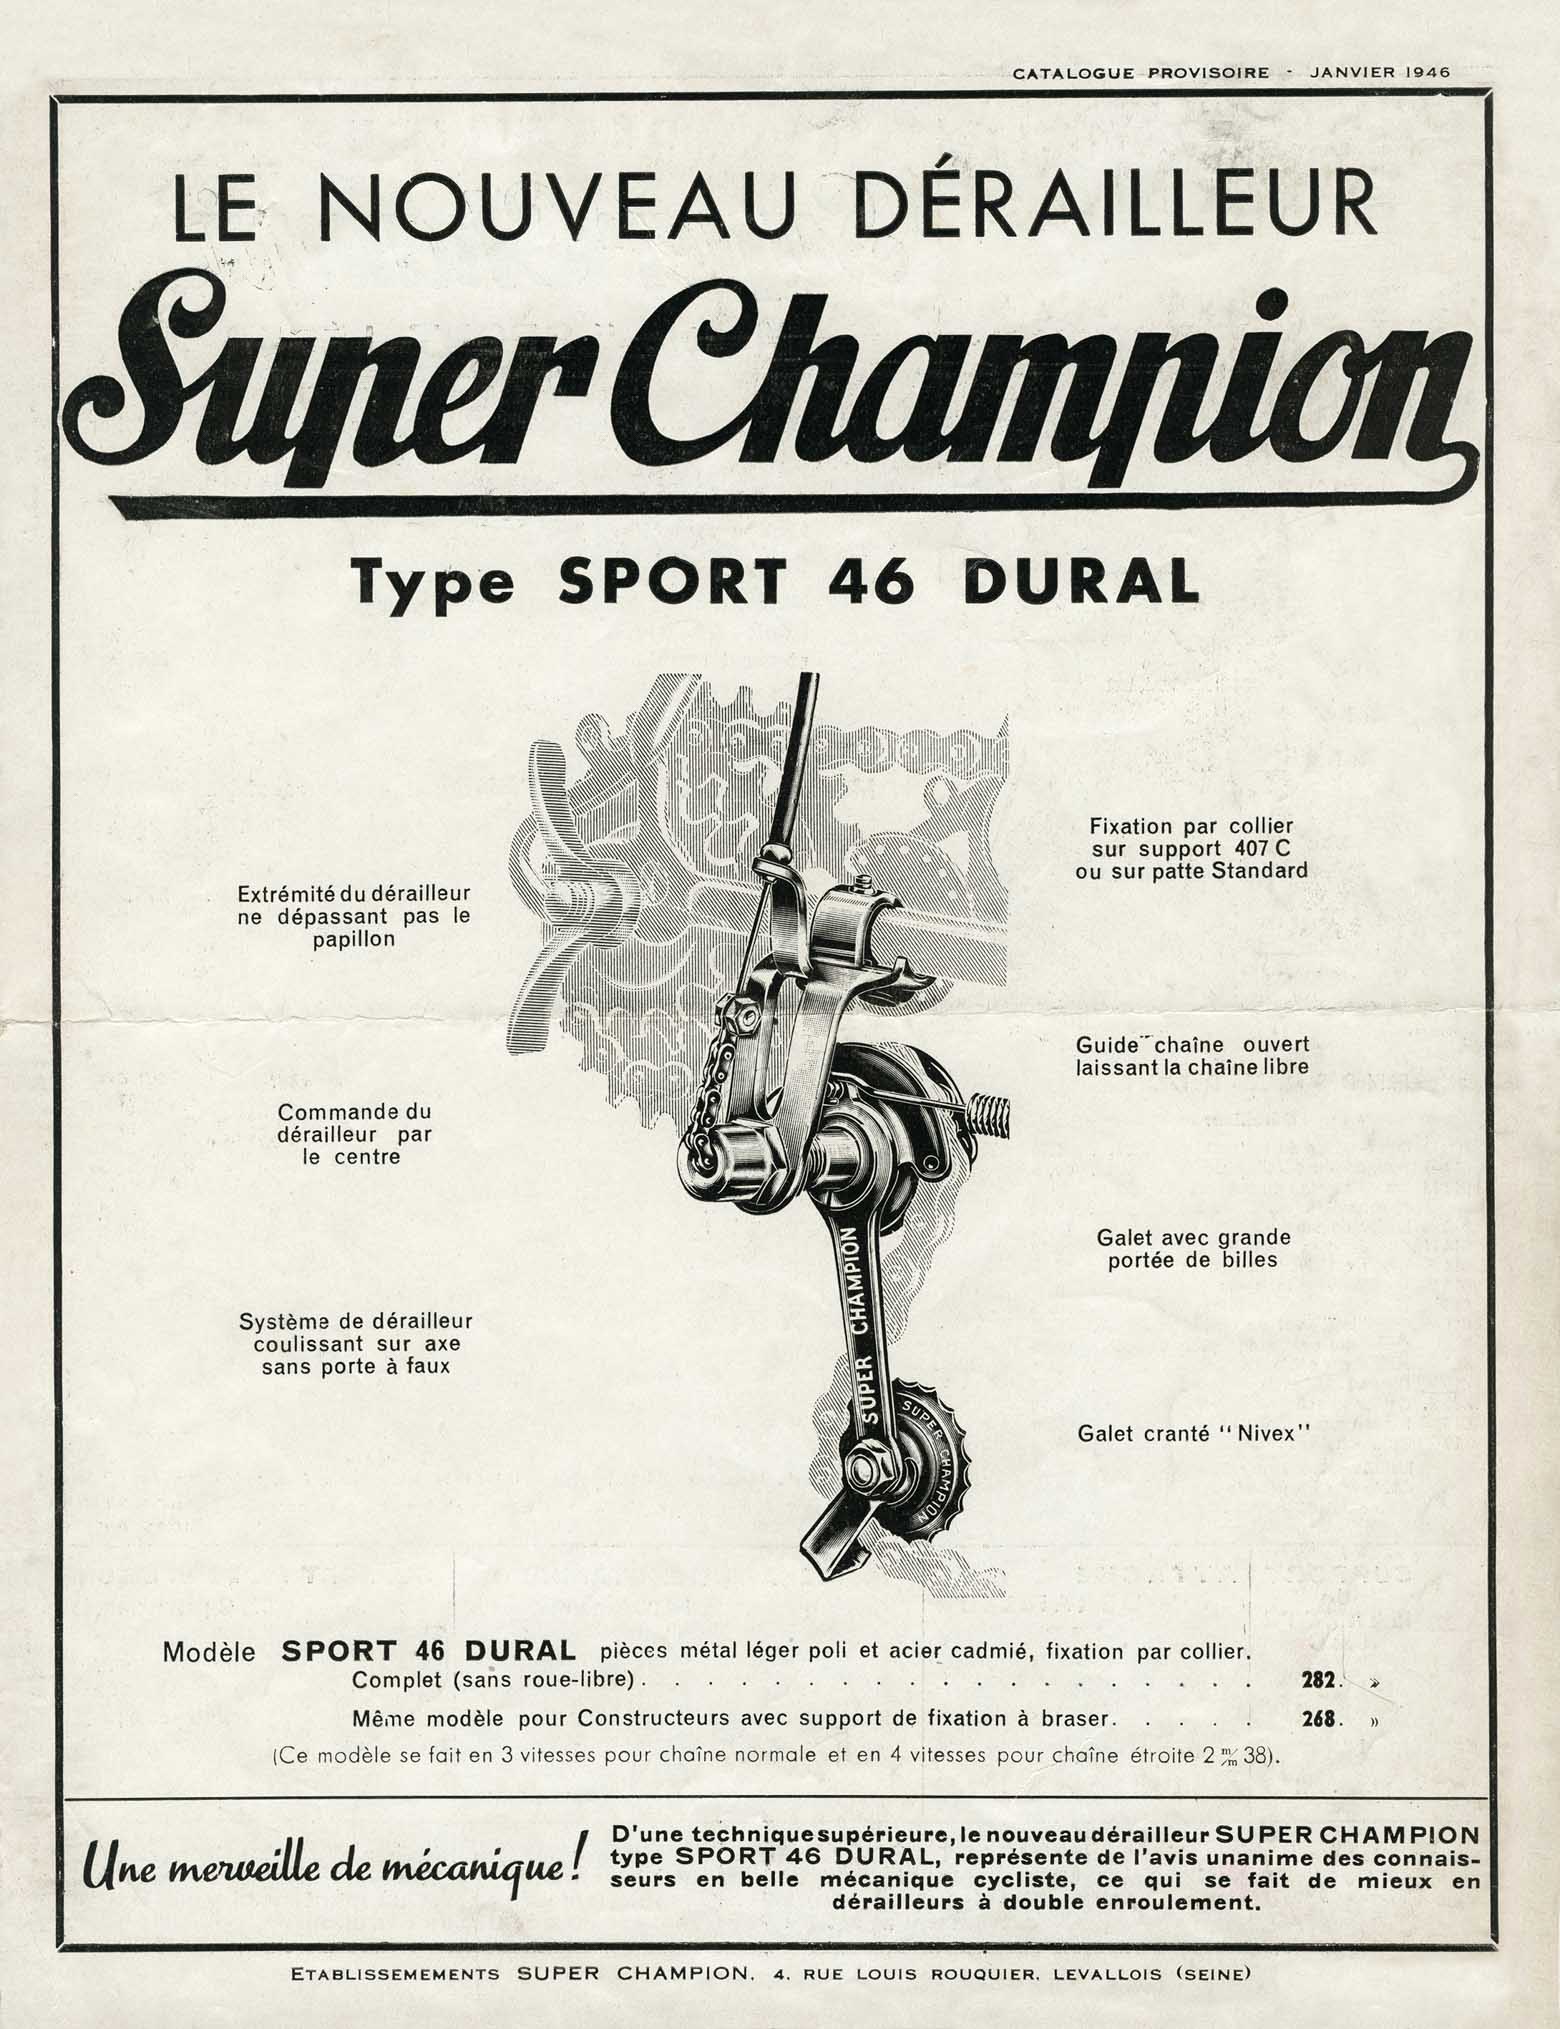 Super Champion Catalogue Provisoire - Janvier 1946 scan 01 main image